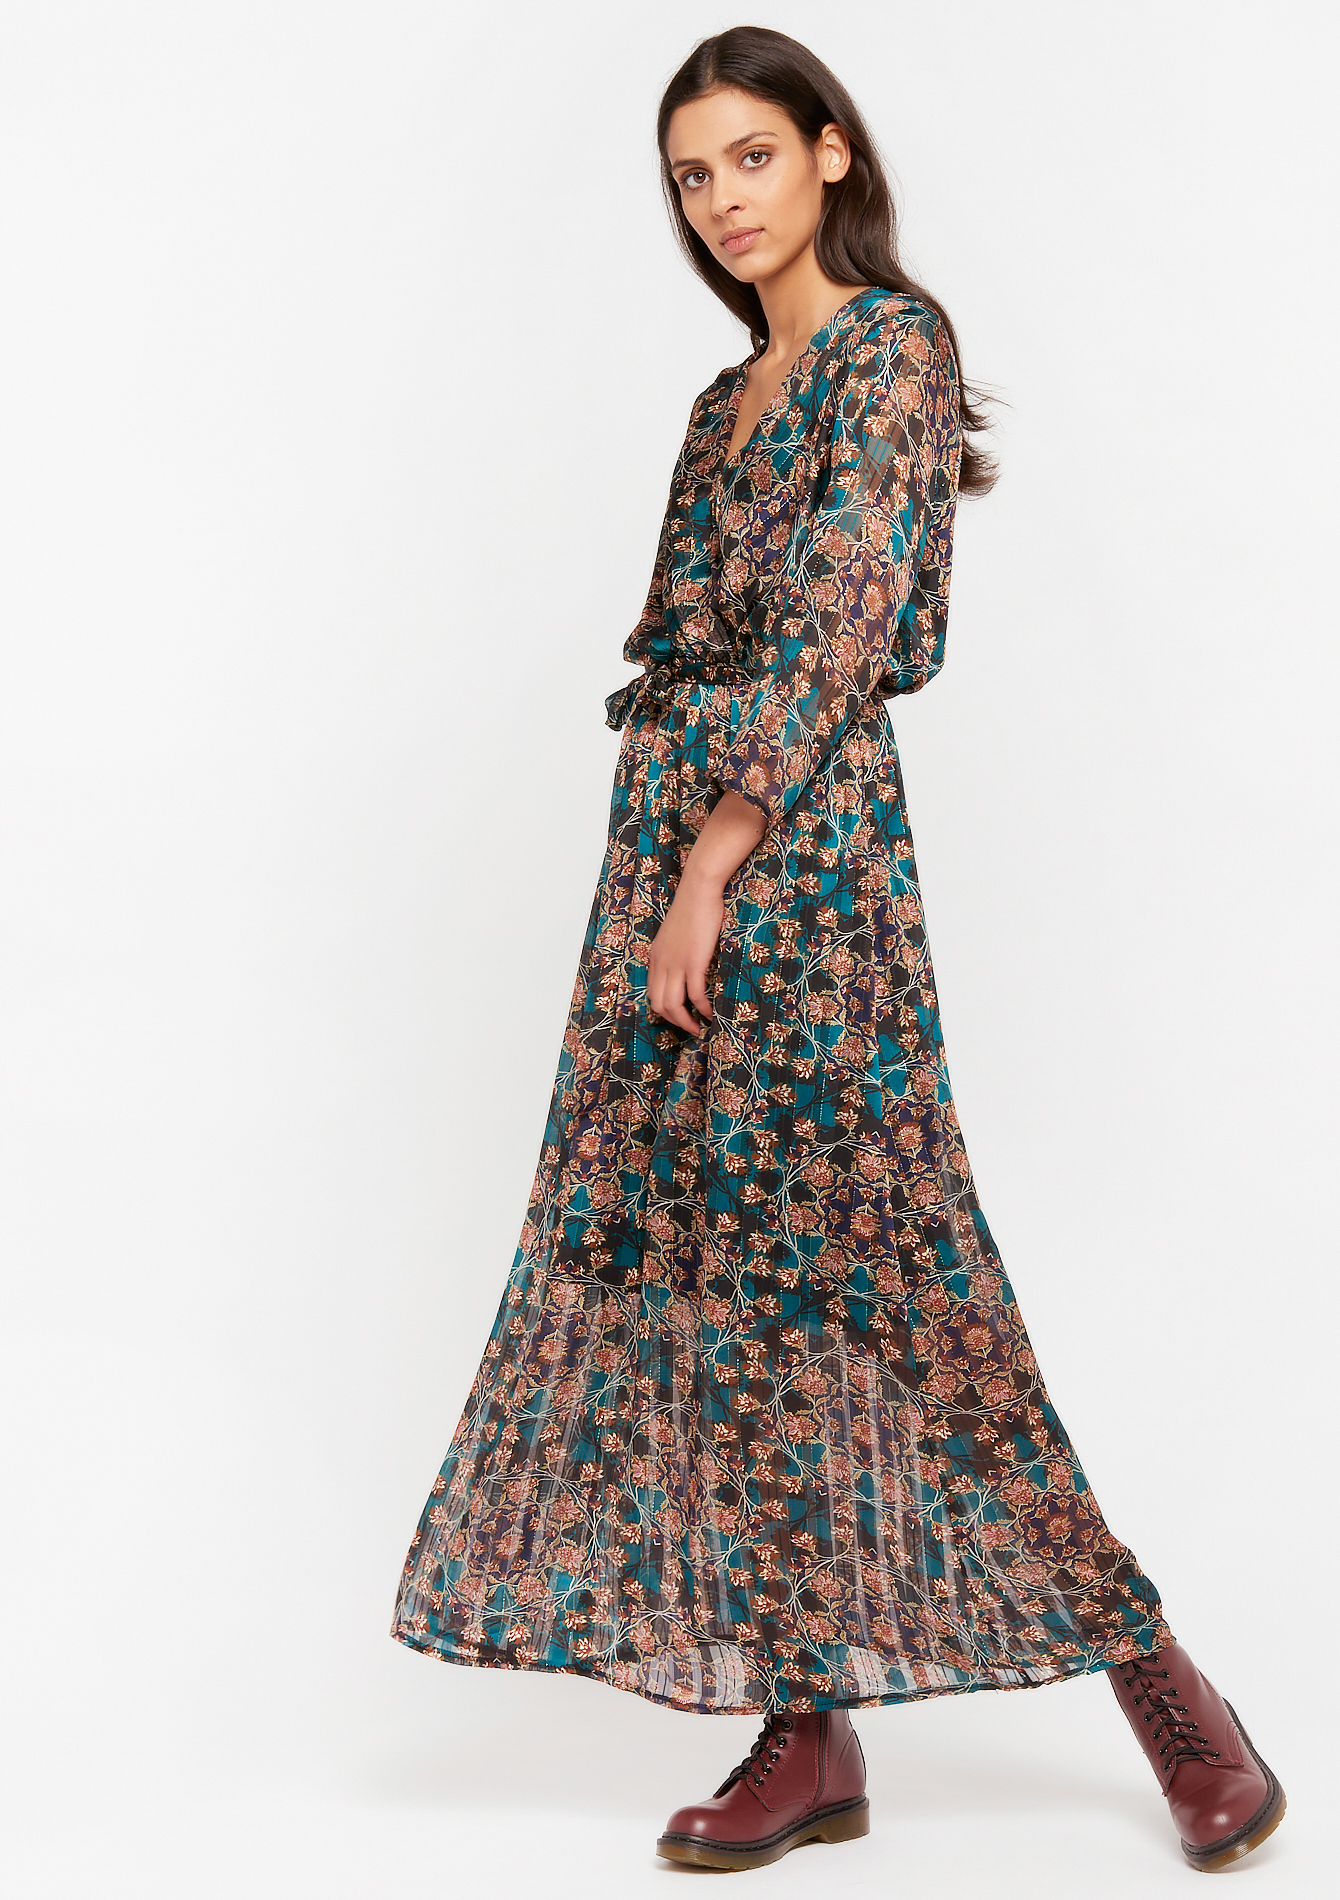 Wrap dress with flower print - LolaLiza